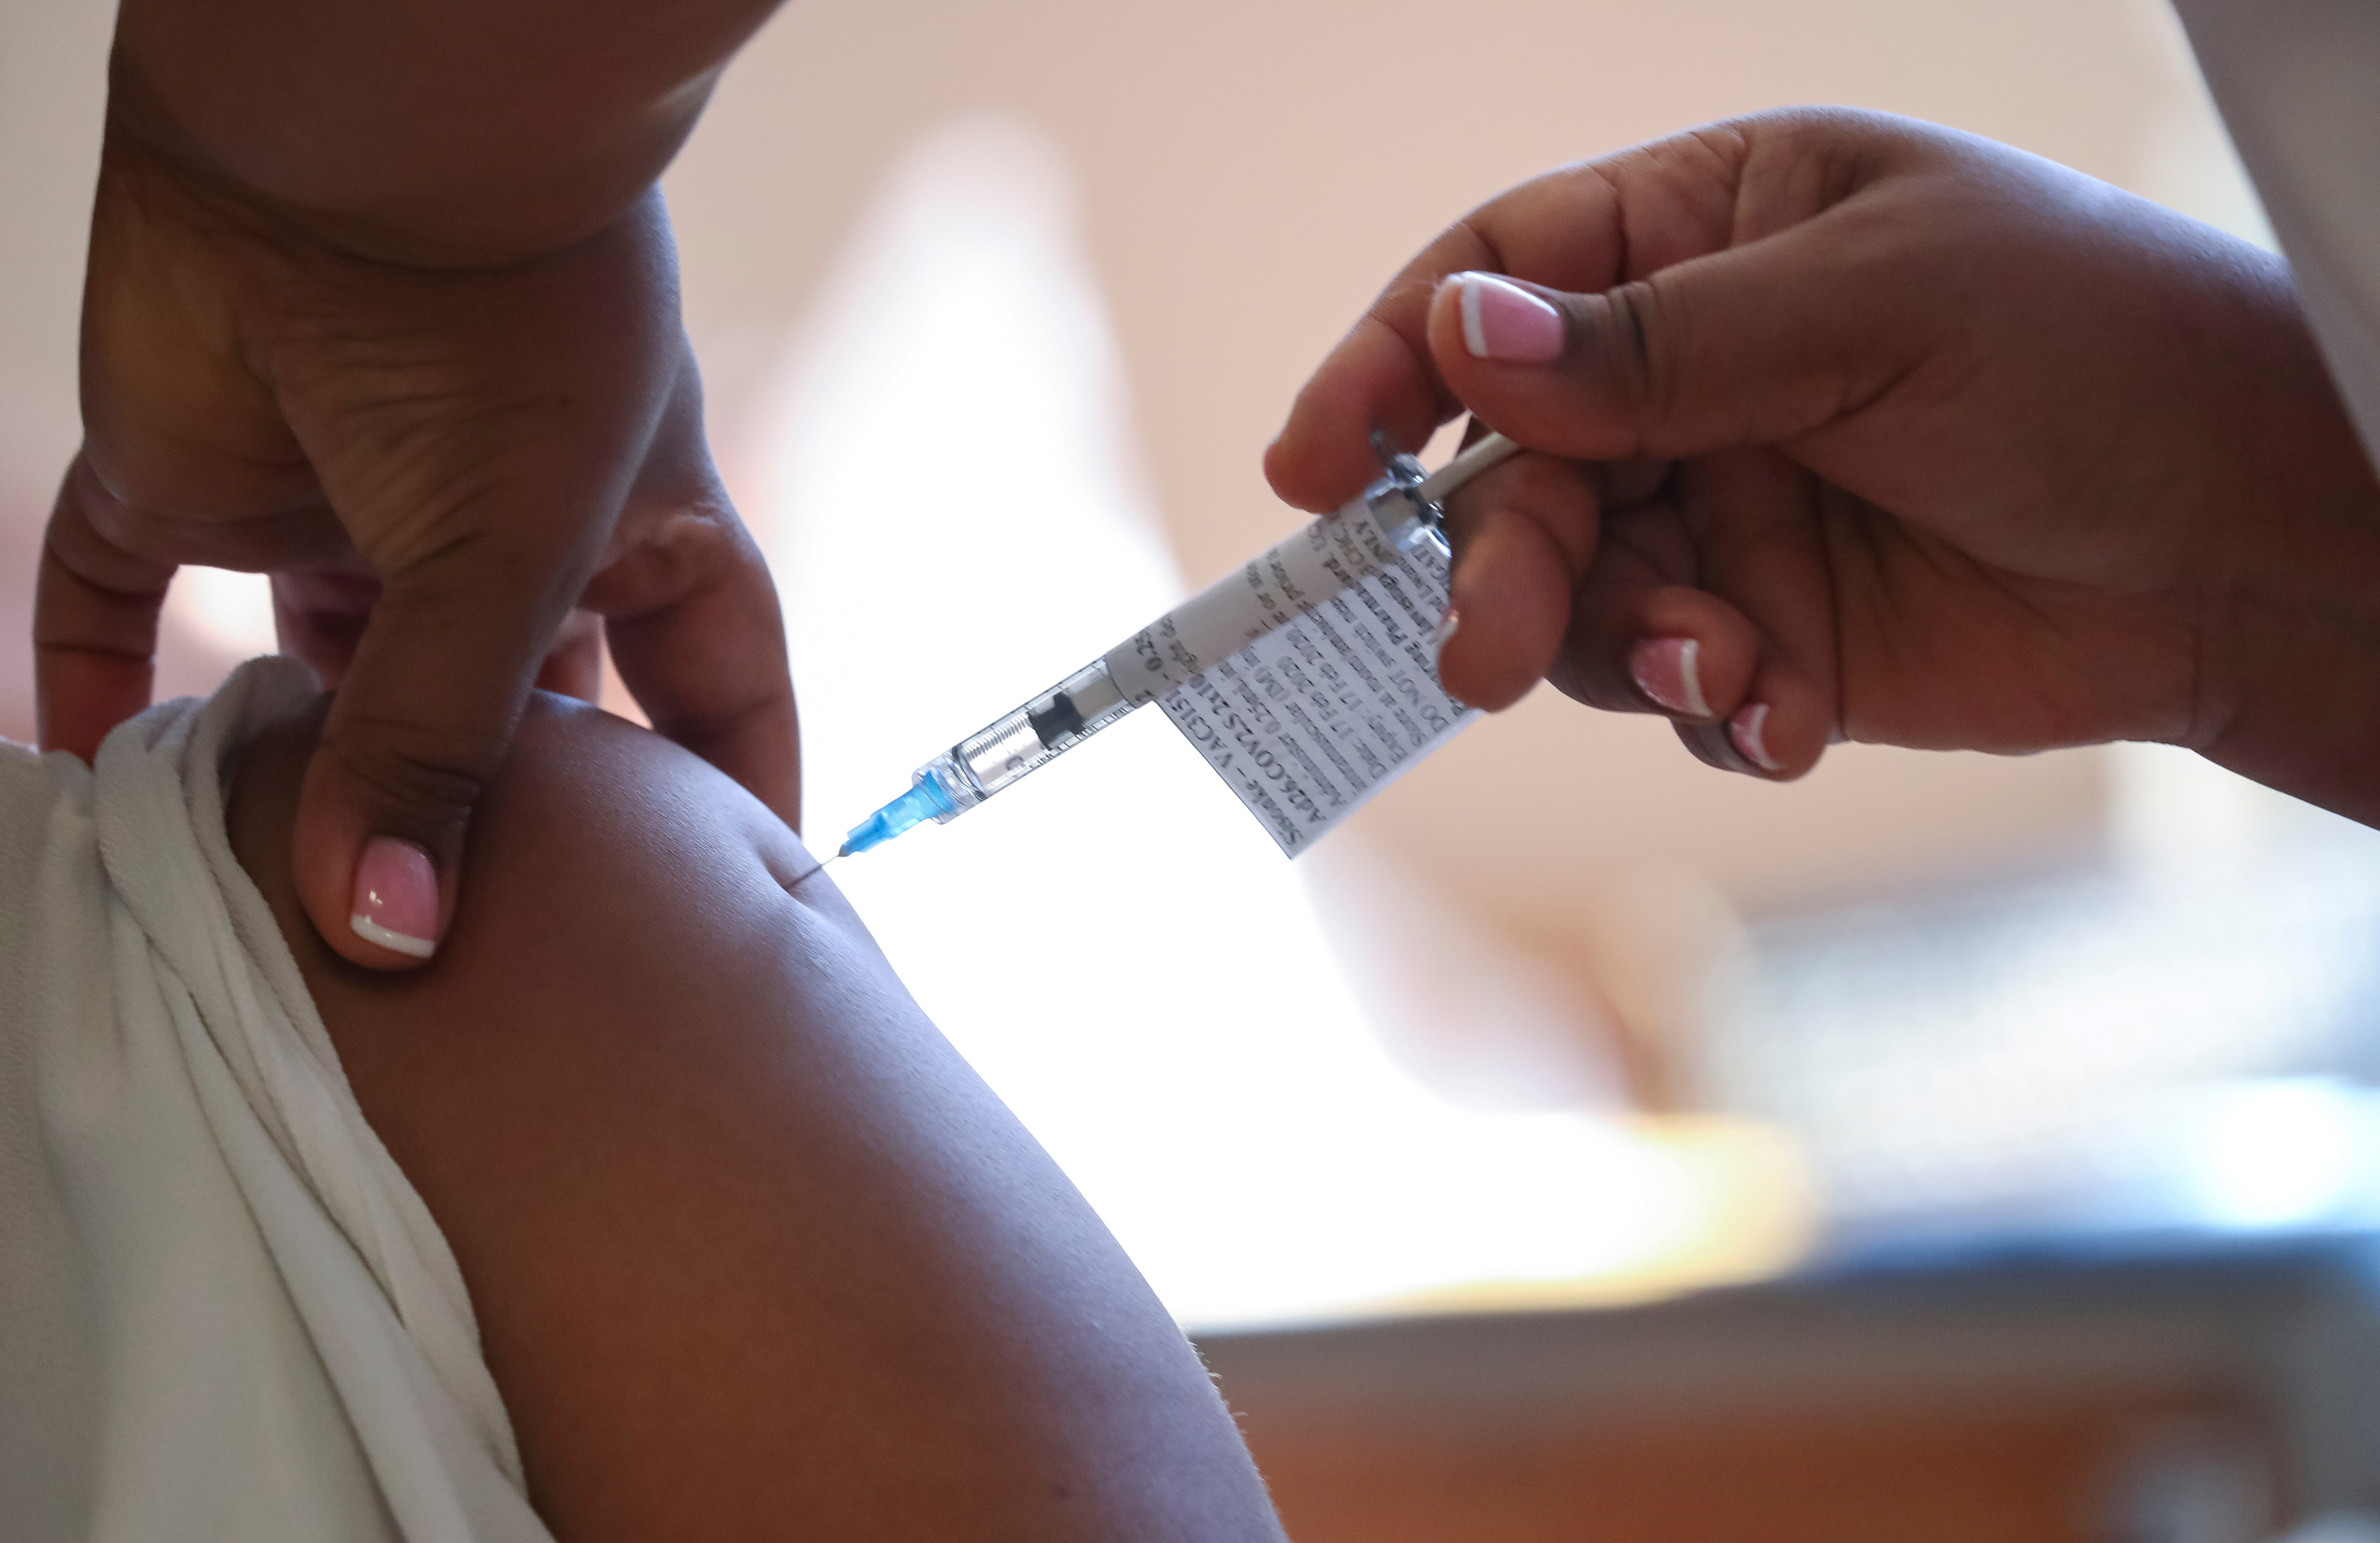 COVID-19 vaccination at Khayelitsha Hospital near Cape Town